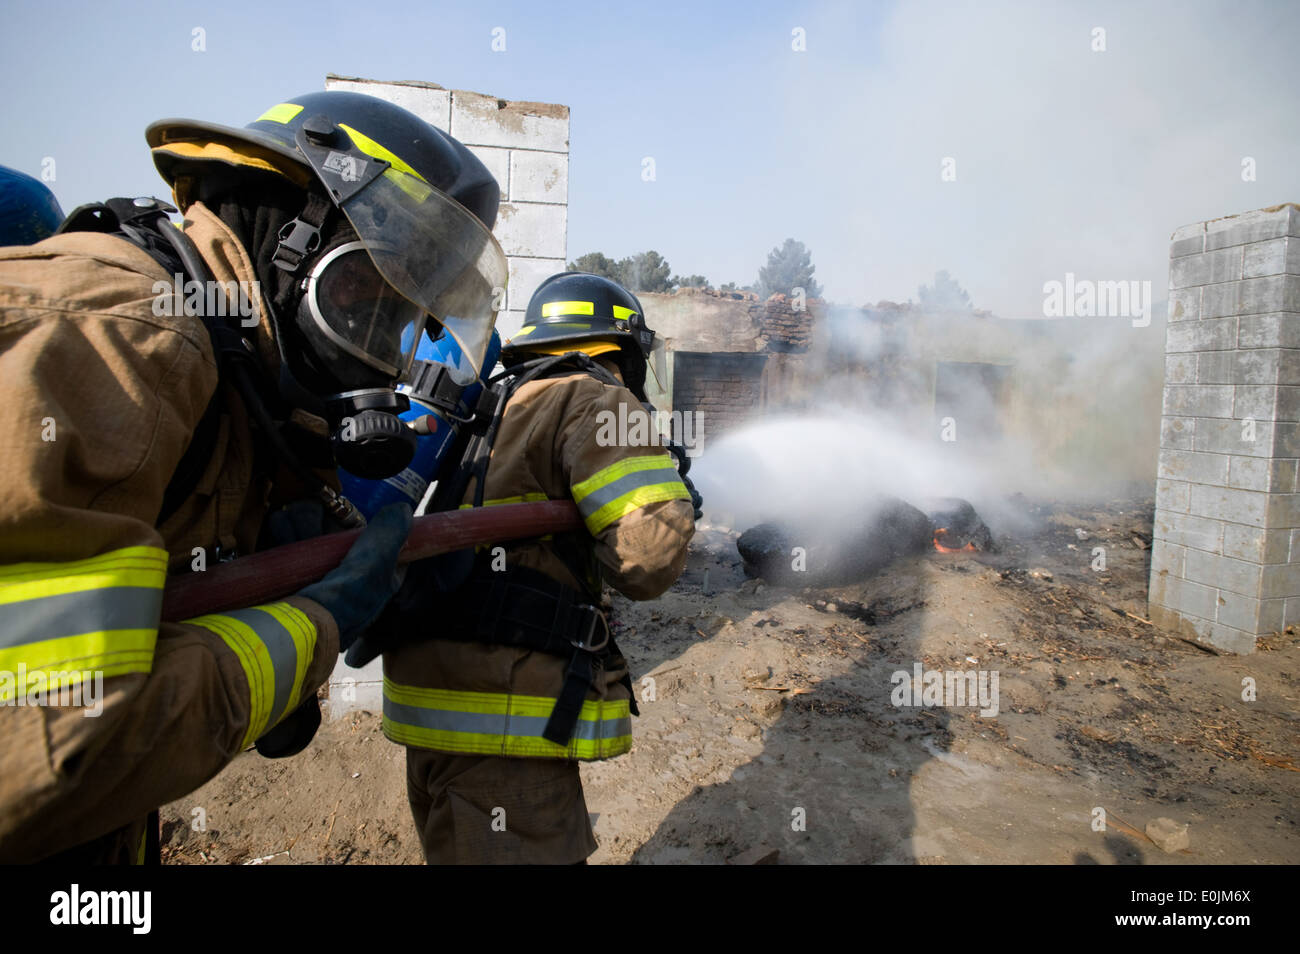 Kaboul, Afghanistan - Membres du Corps de l'air nationale afghane de l'unité de protection incendie répondre un feu intentionnellement le dans un dilapi Banque D'Images